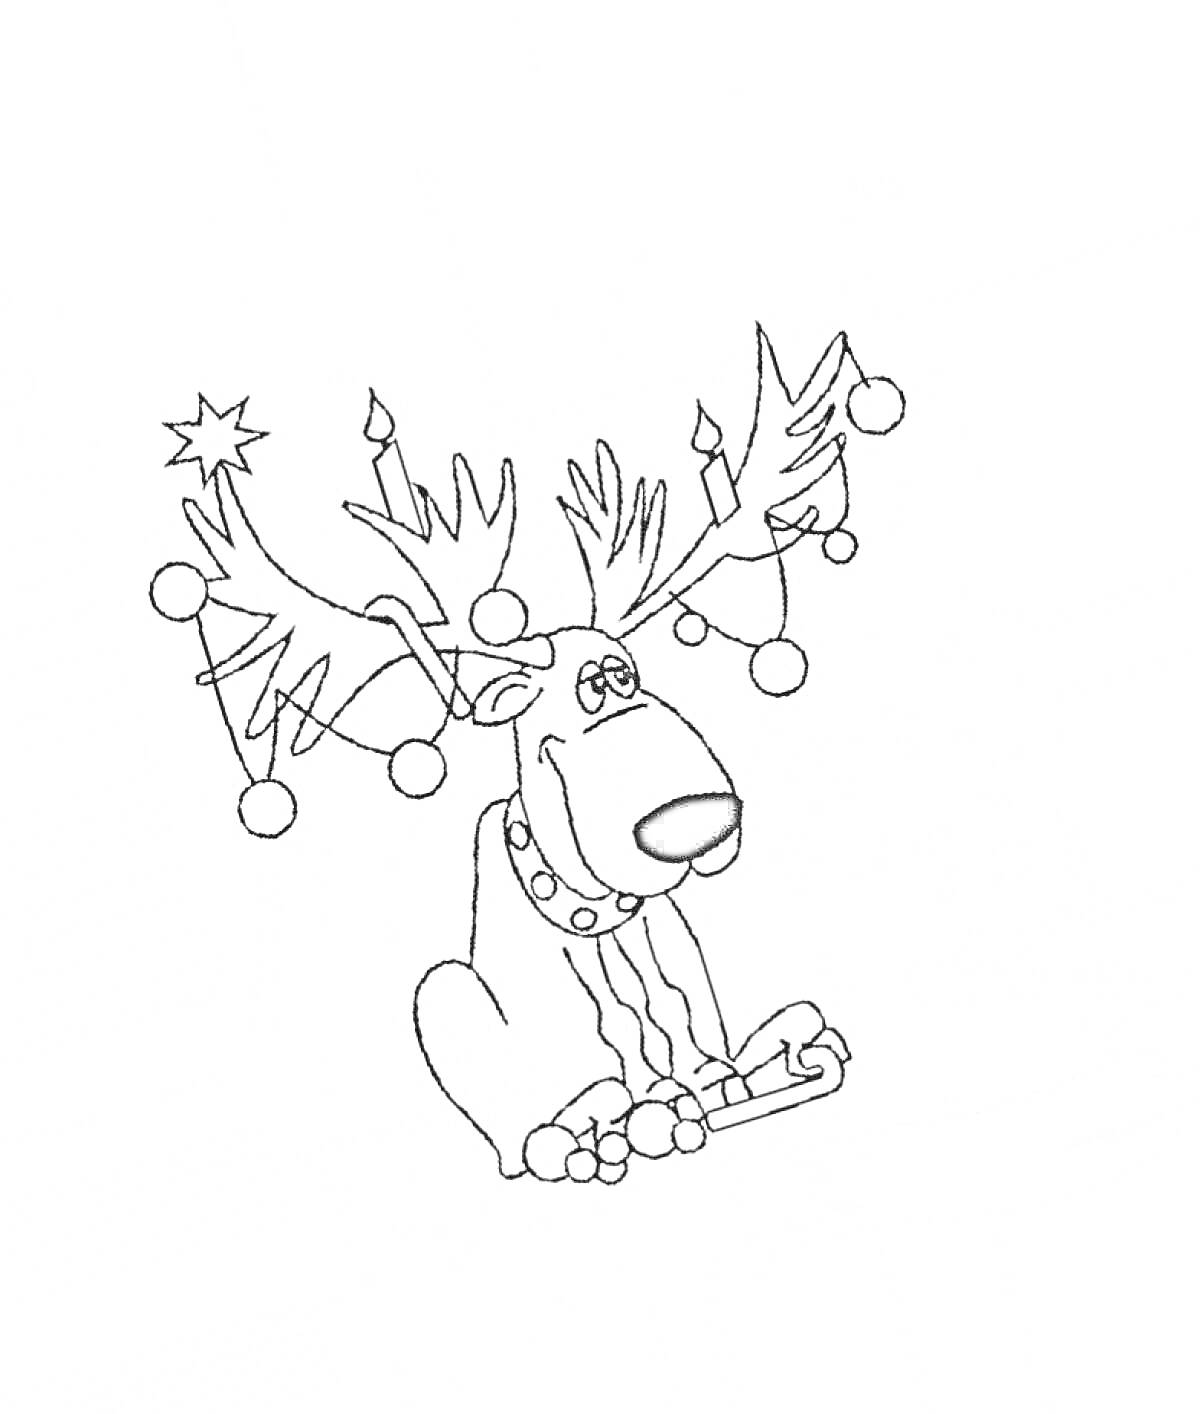 Раскраска Олень с рождественскими украшениями на рогах